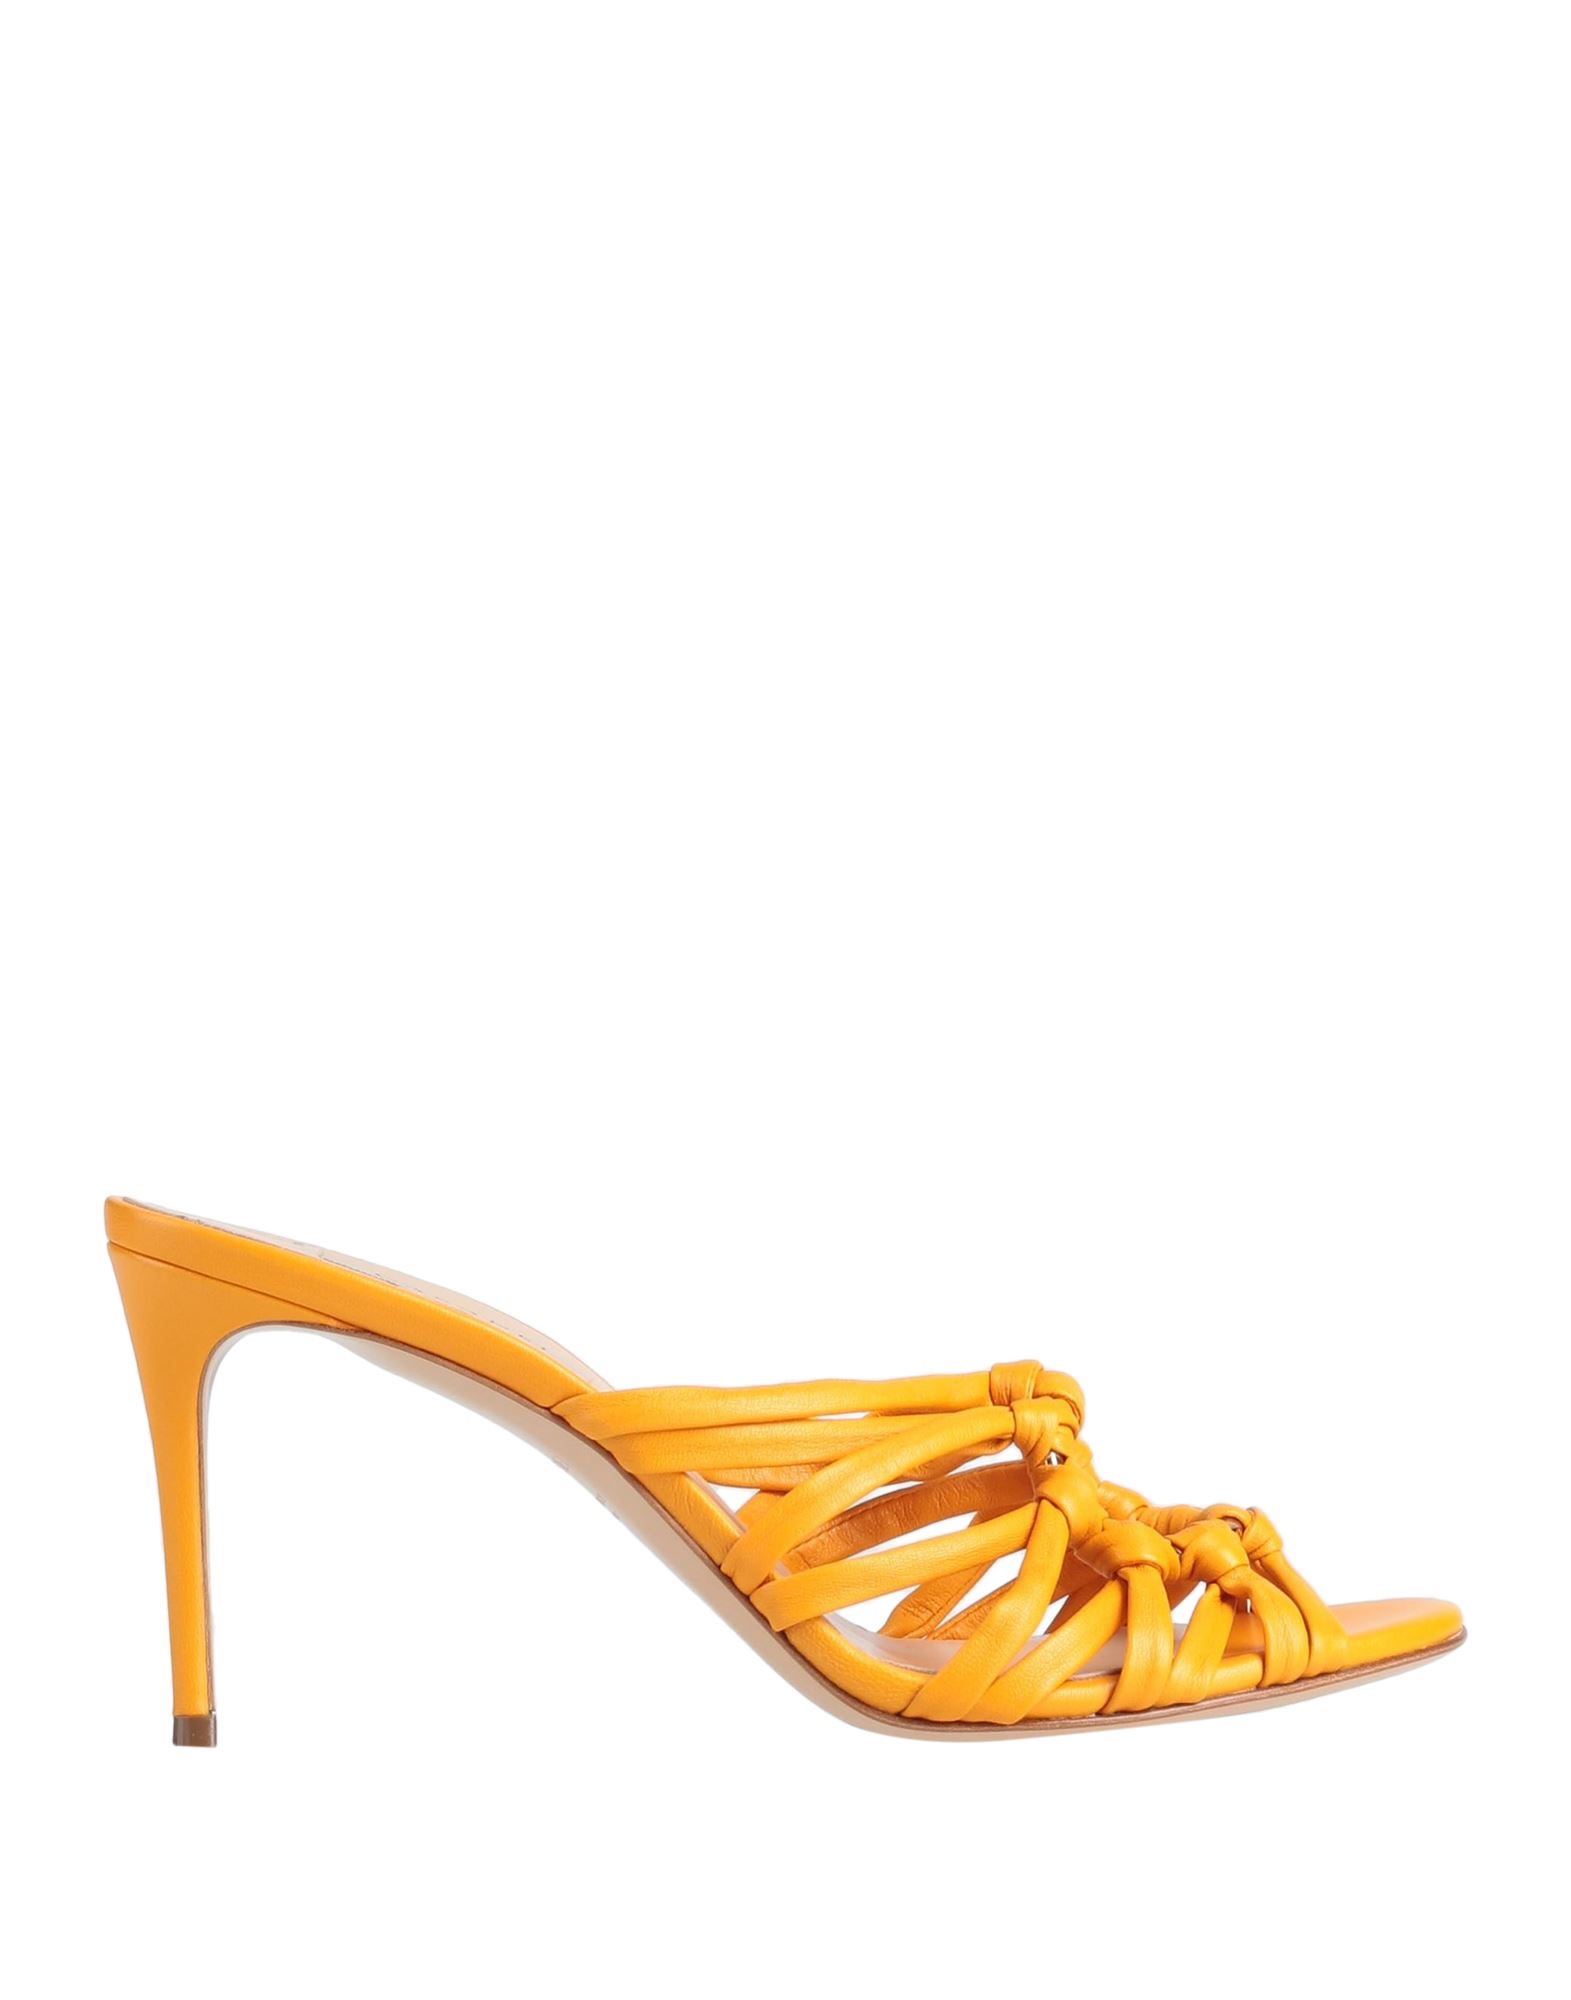 Casadei Sandals In Orange